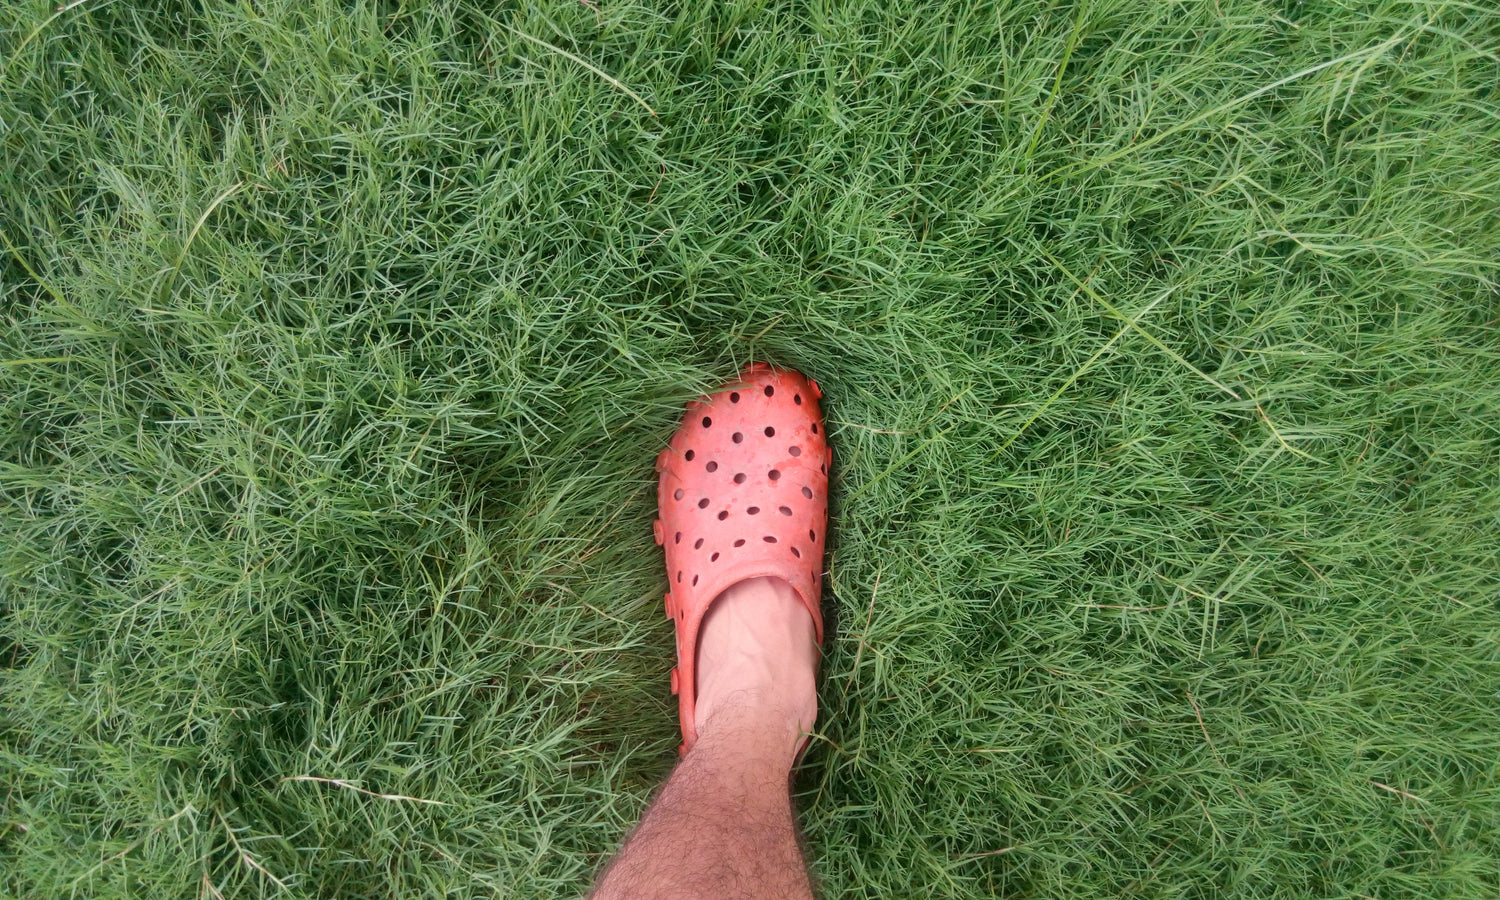 sweaty feet stepping on grass